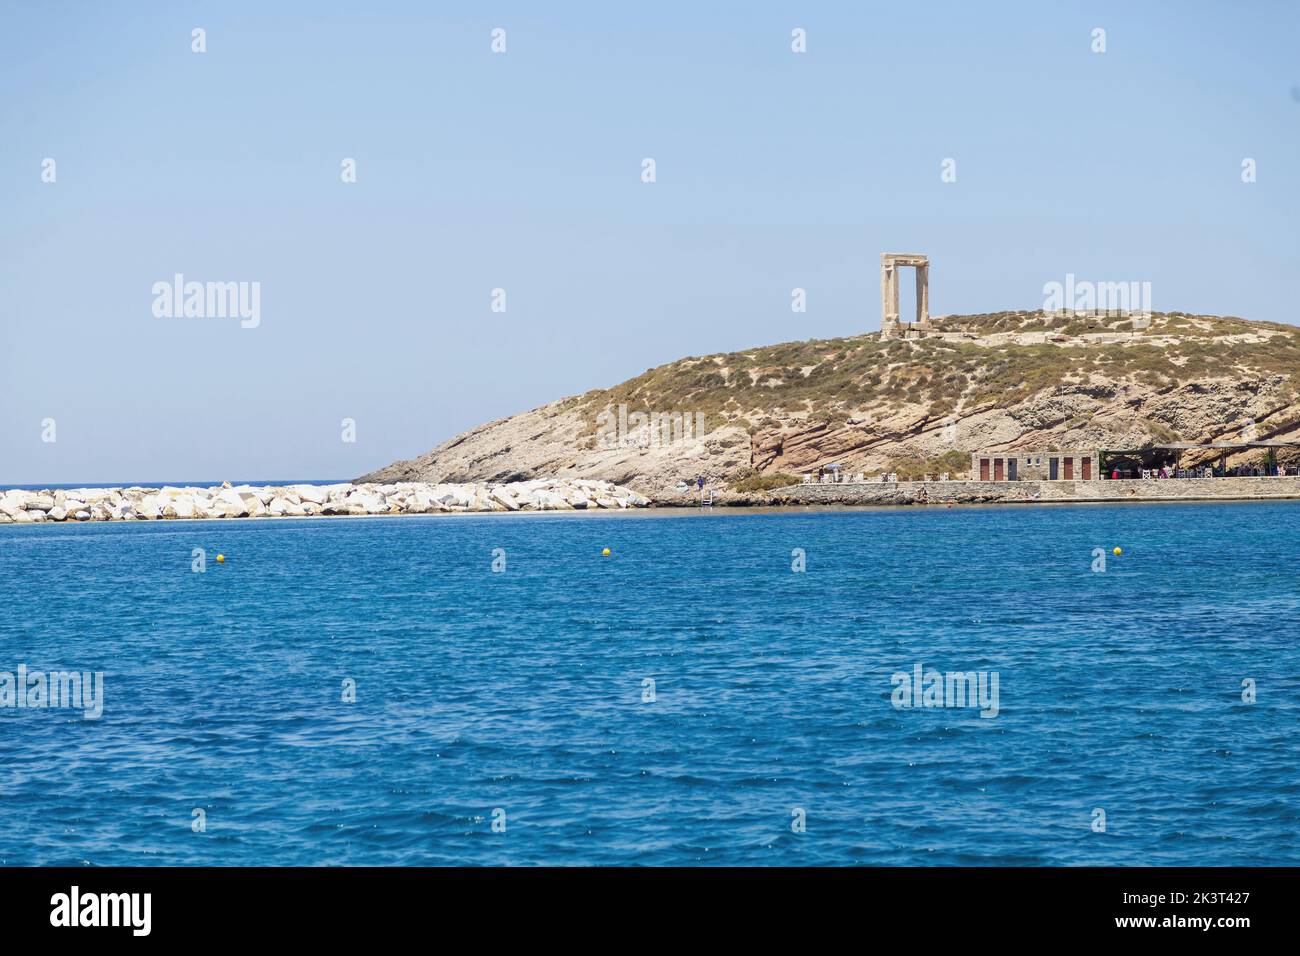 Île de Naxos, Temple sacré d'Apollon, Cyclades Grèce. Café en bord de mer de l'îlot de Palatia, brise-lames en pierre au port de Naxos. Banque D'Images